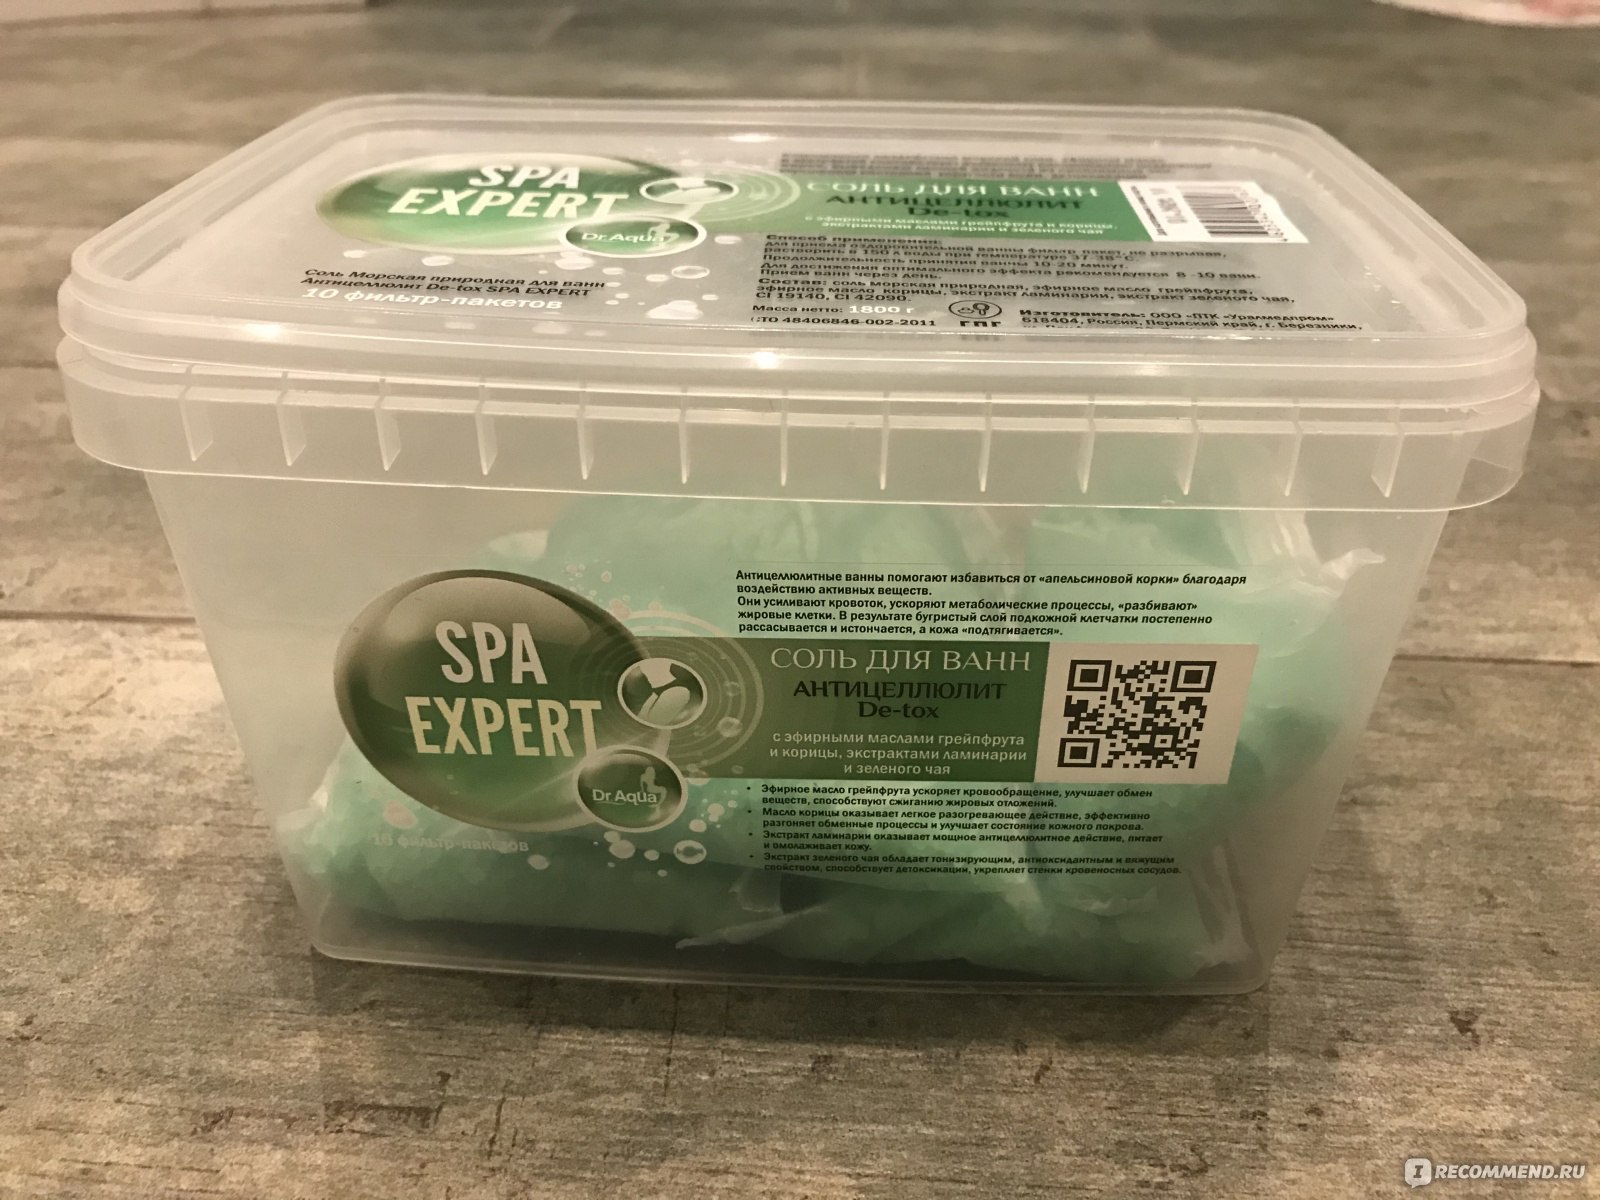 Соль для ванн Dr. Aqua Антицеллюлит De-tox SPA EXPERT